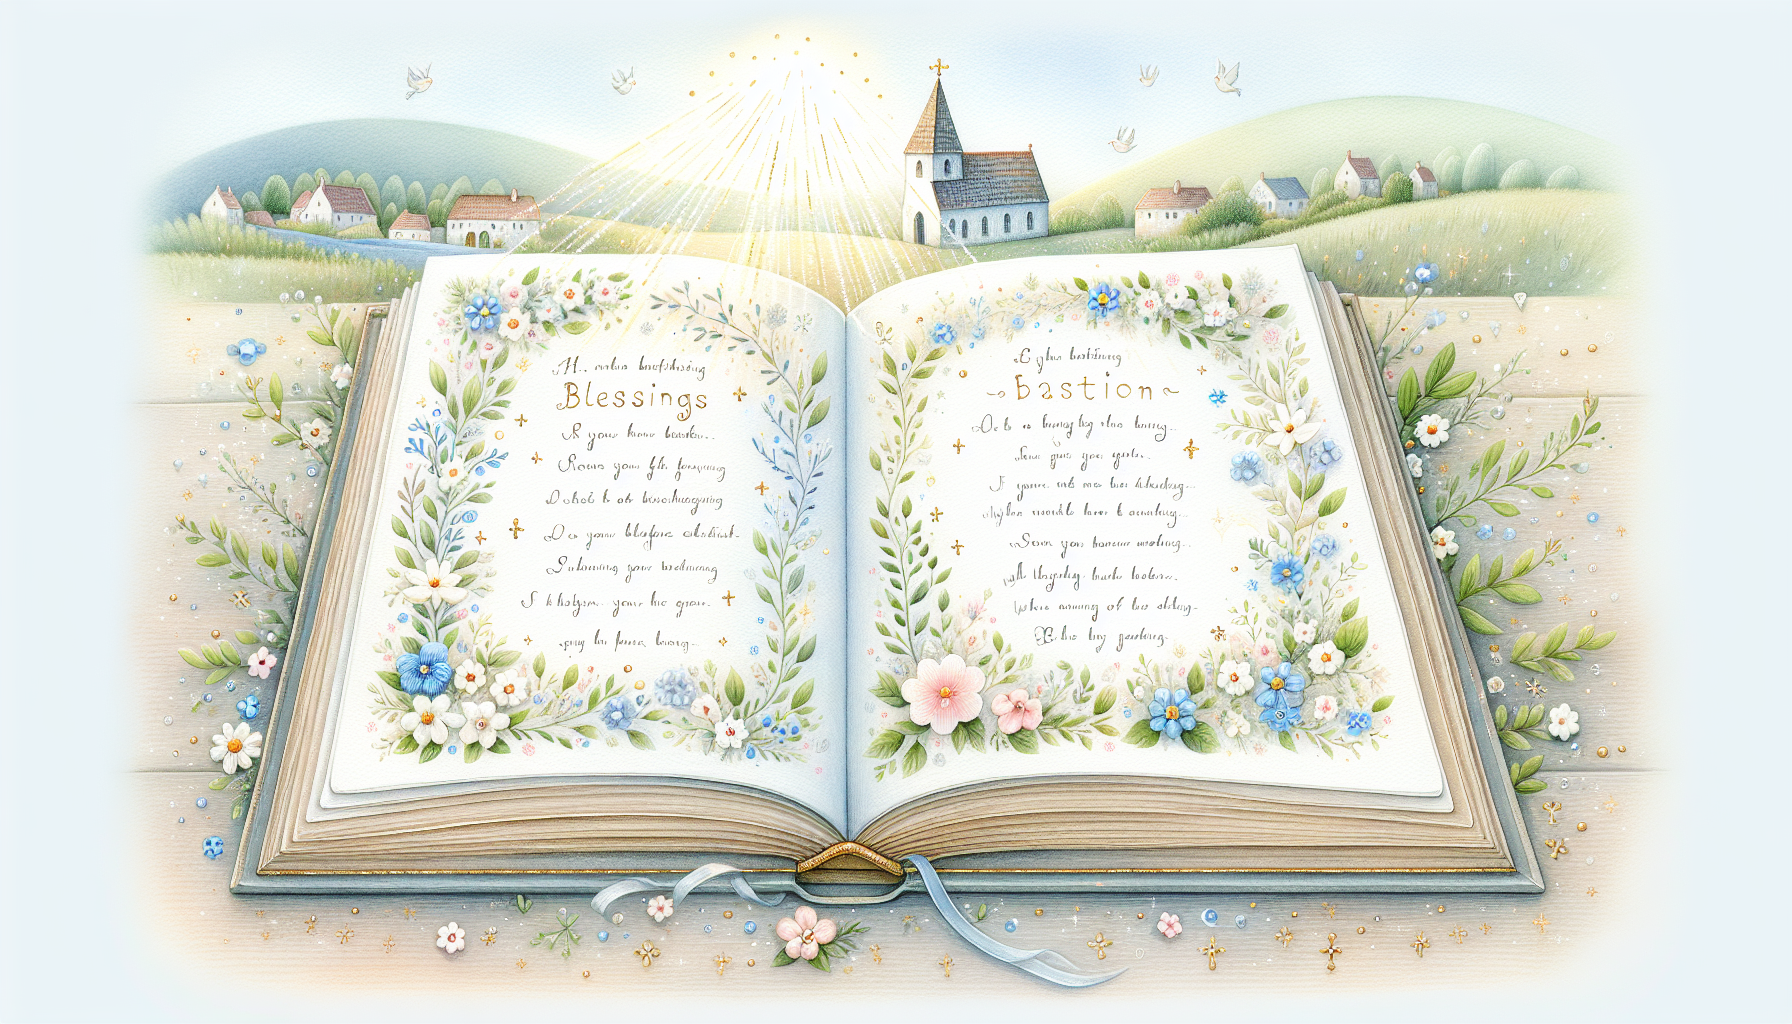 Una ilustración delicada y colorida que muestra un libro abierto con páginas suaves y decoradas, en la que cada página contiene diferentes oraciones para bautizo de niño escritas en elegante caligrafí